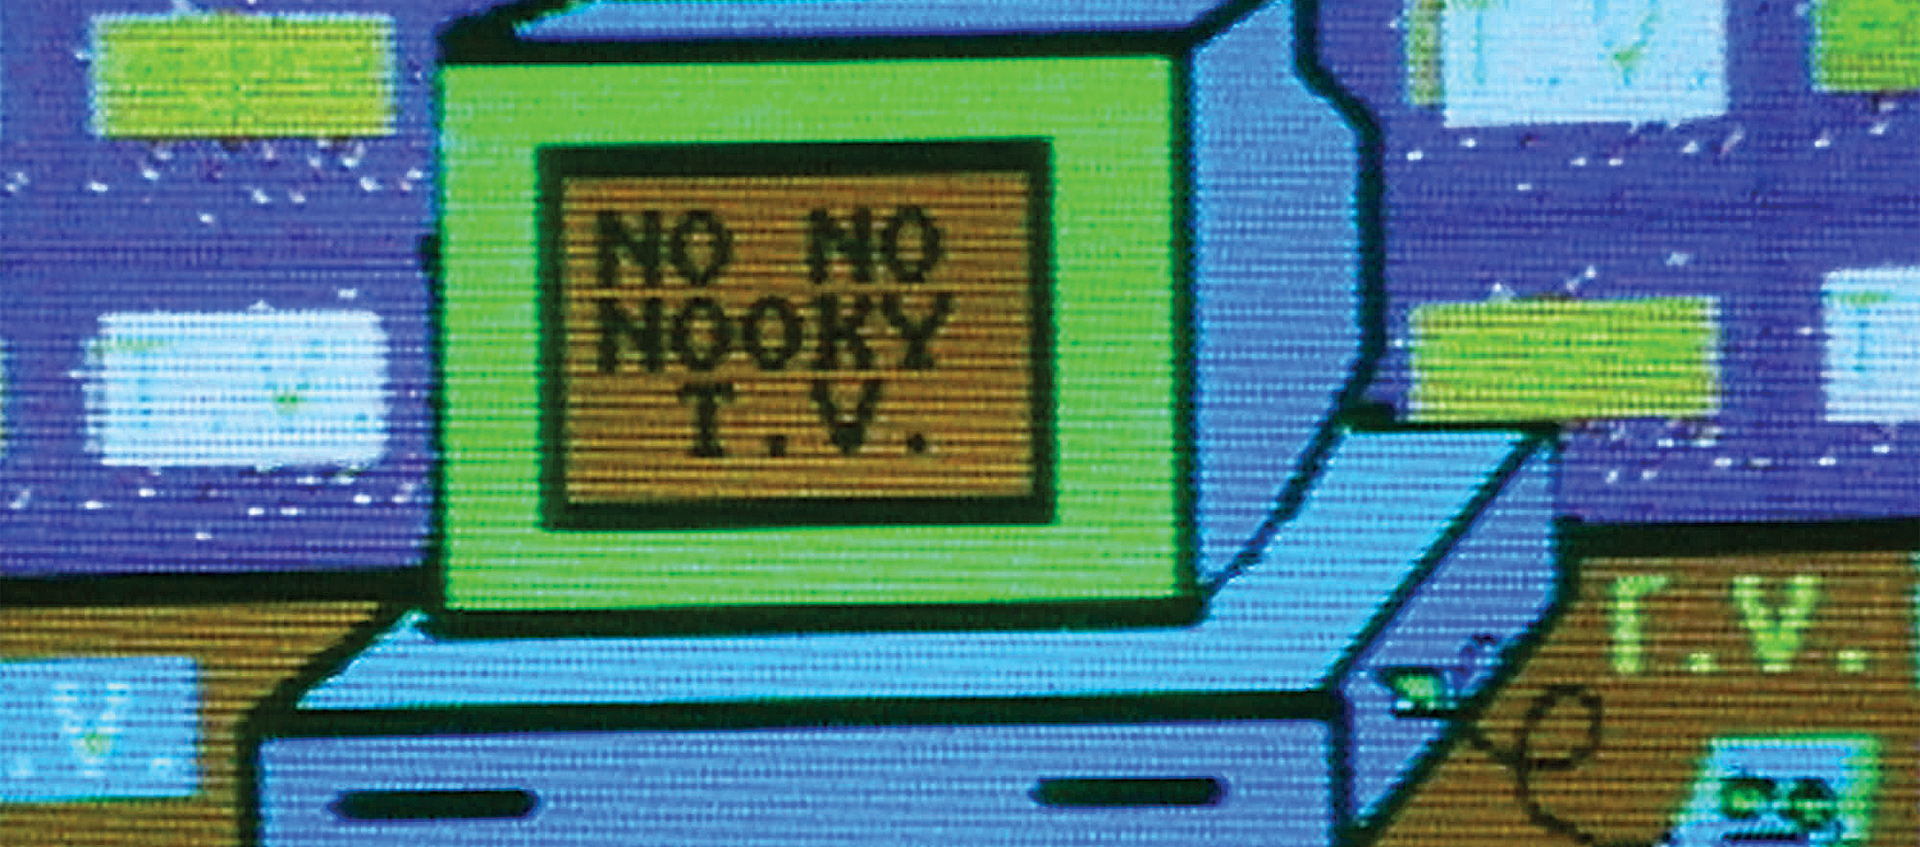 No No Nooky T.V.